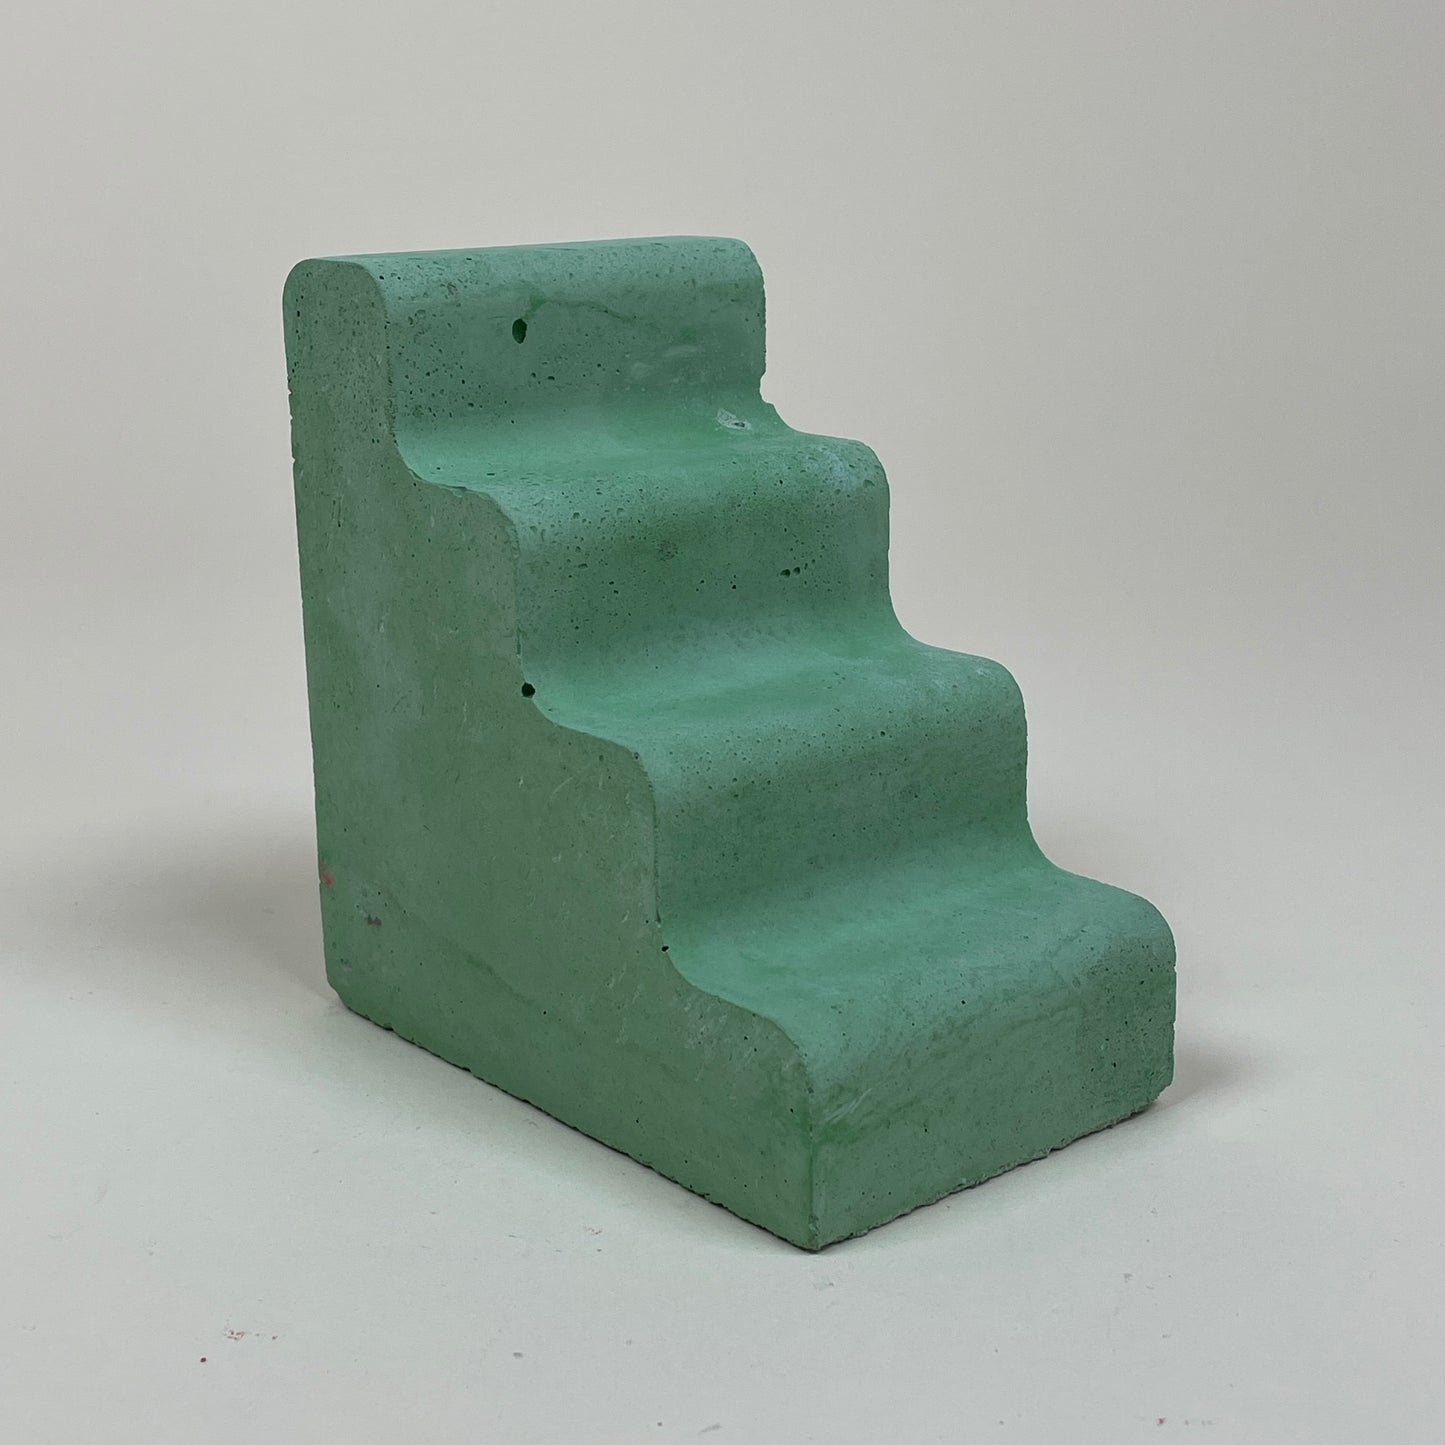 Green concrete bookend by Clara von Zweigbergk